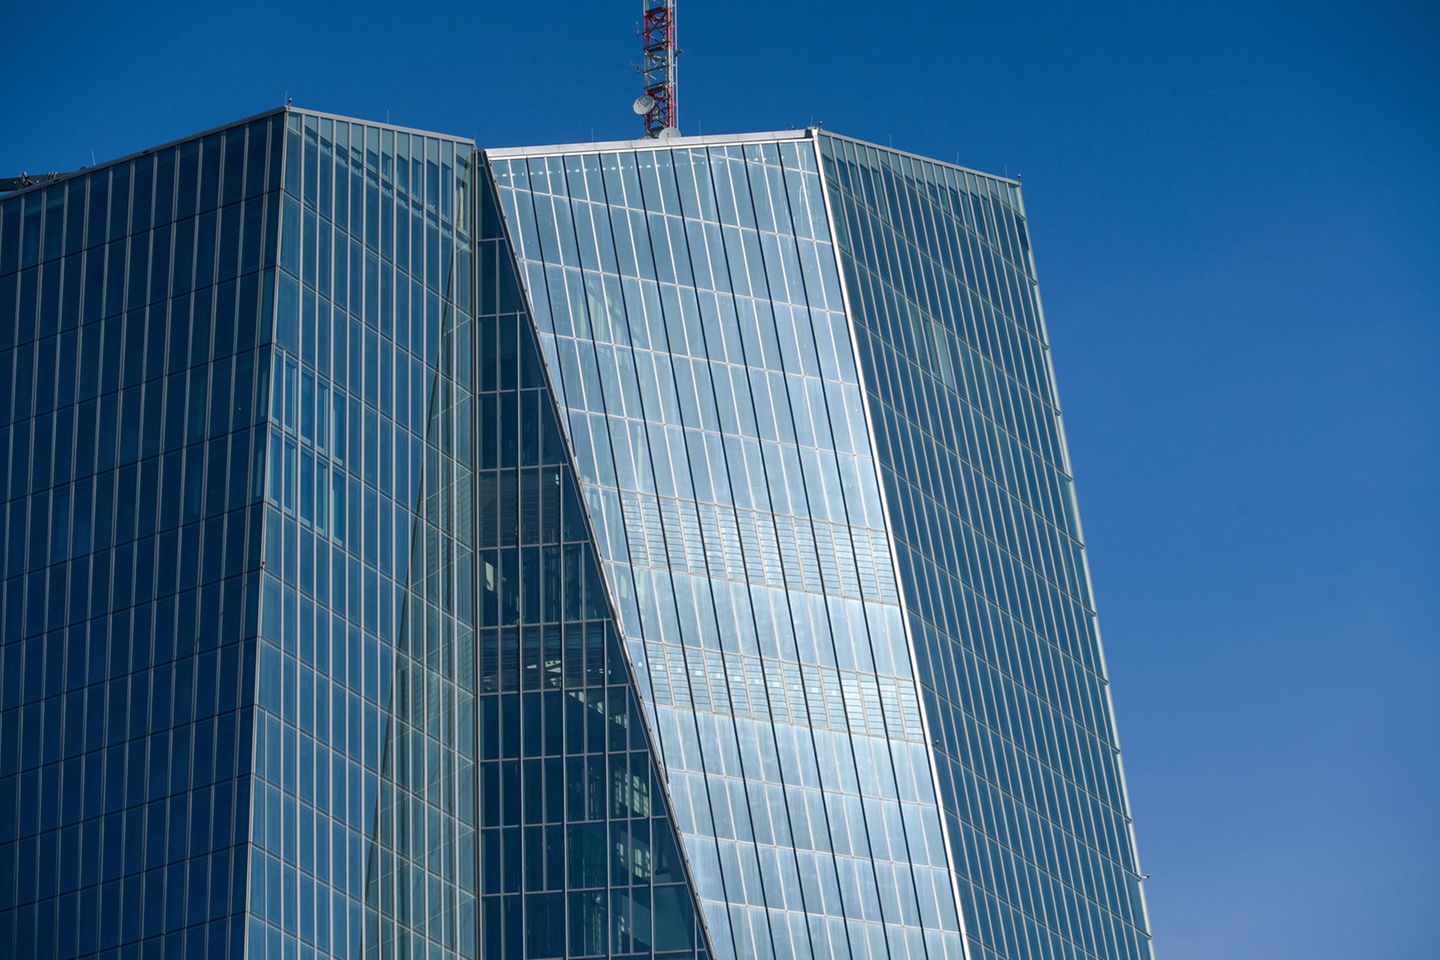 Die EZB-Zentrale in Frankfurt. Dorthin hat der Rat seine Mitglieder am Mittwoch zu einer Dringlichkeitssitzung eingeladen, um über die Stabilität der Eurozone zu beraten